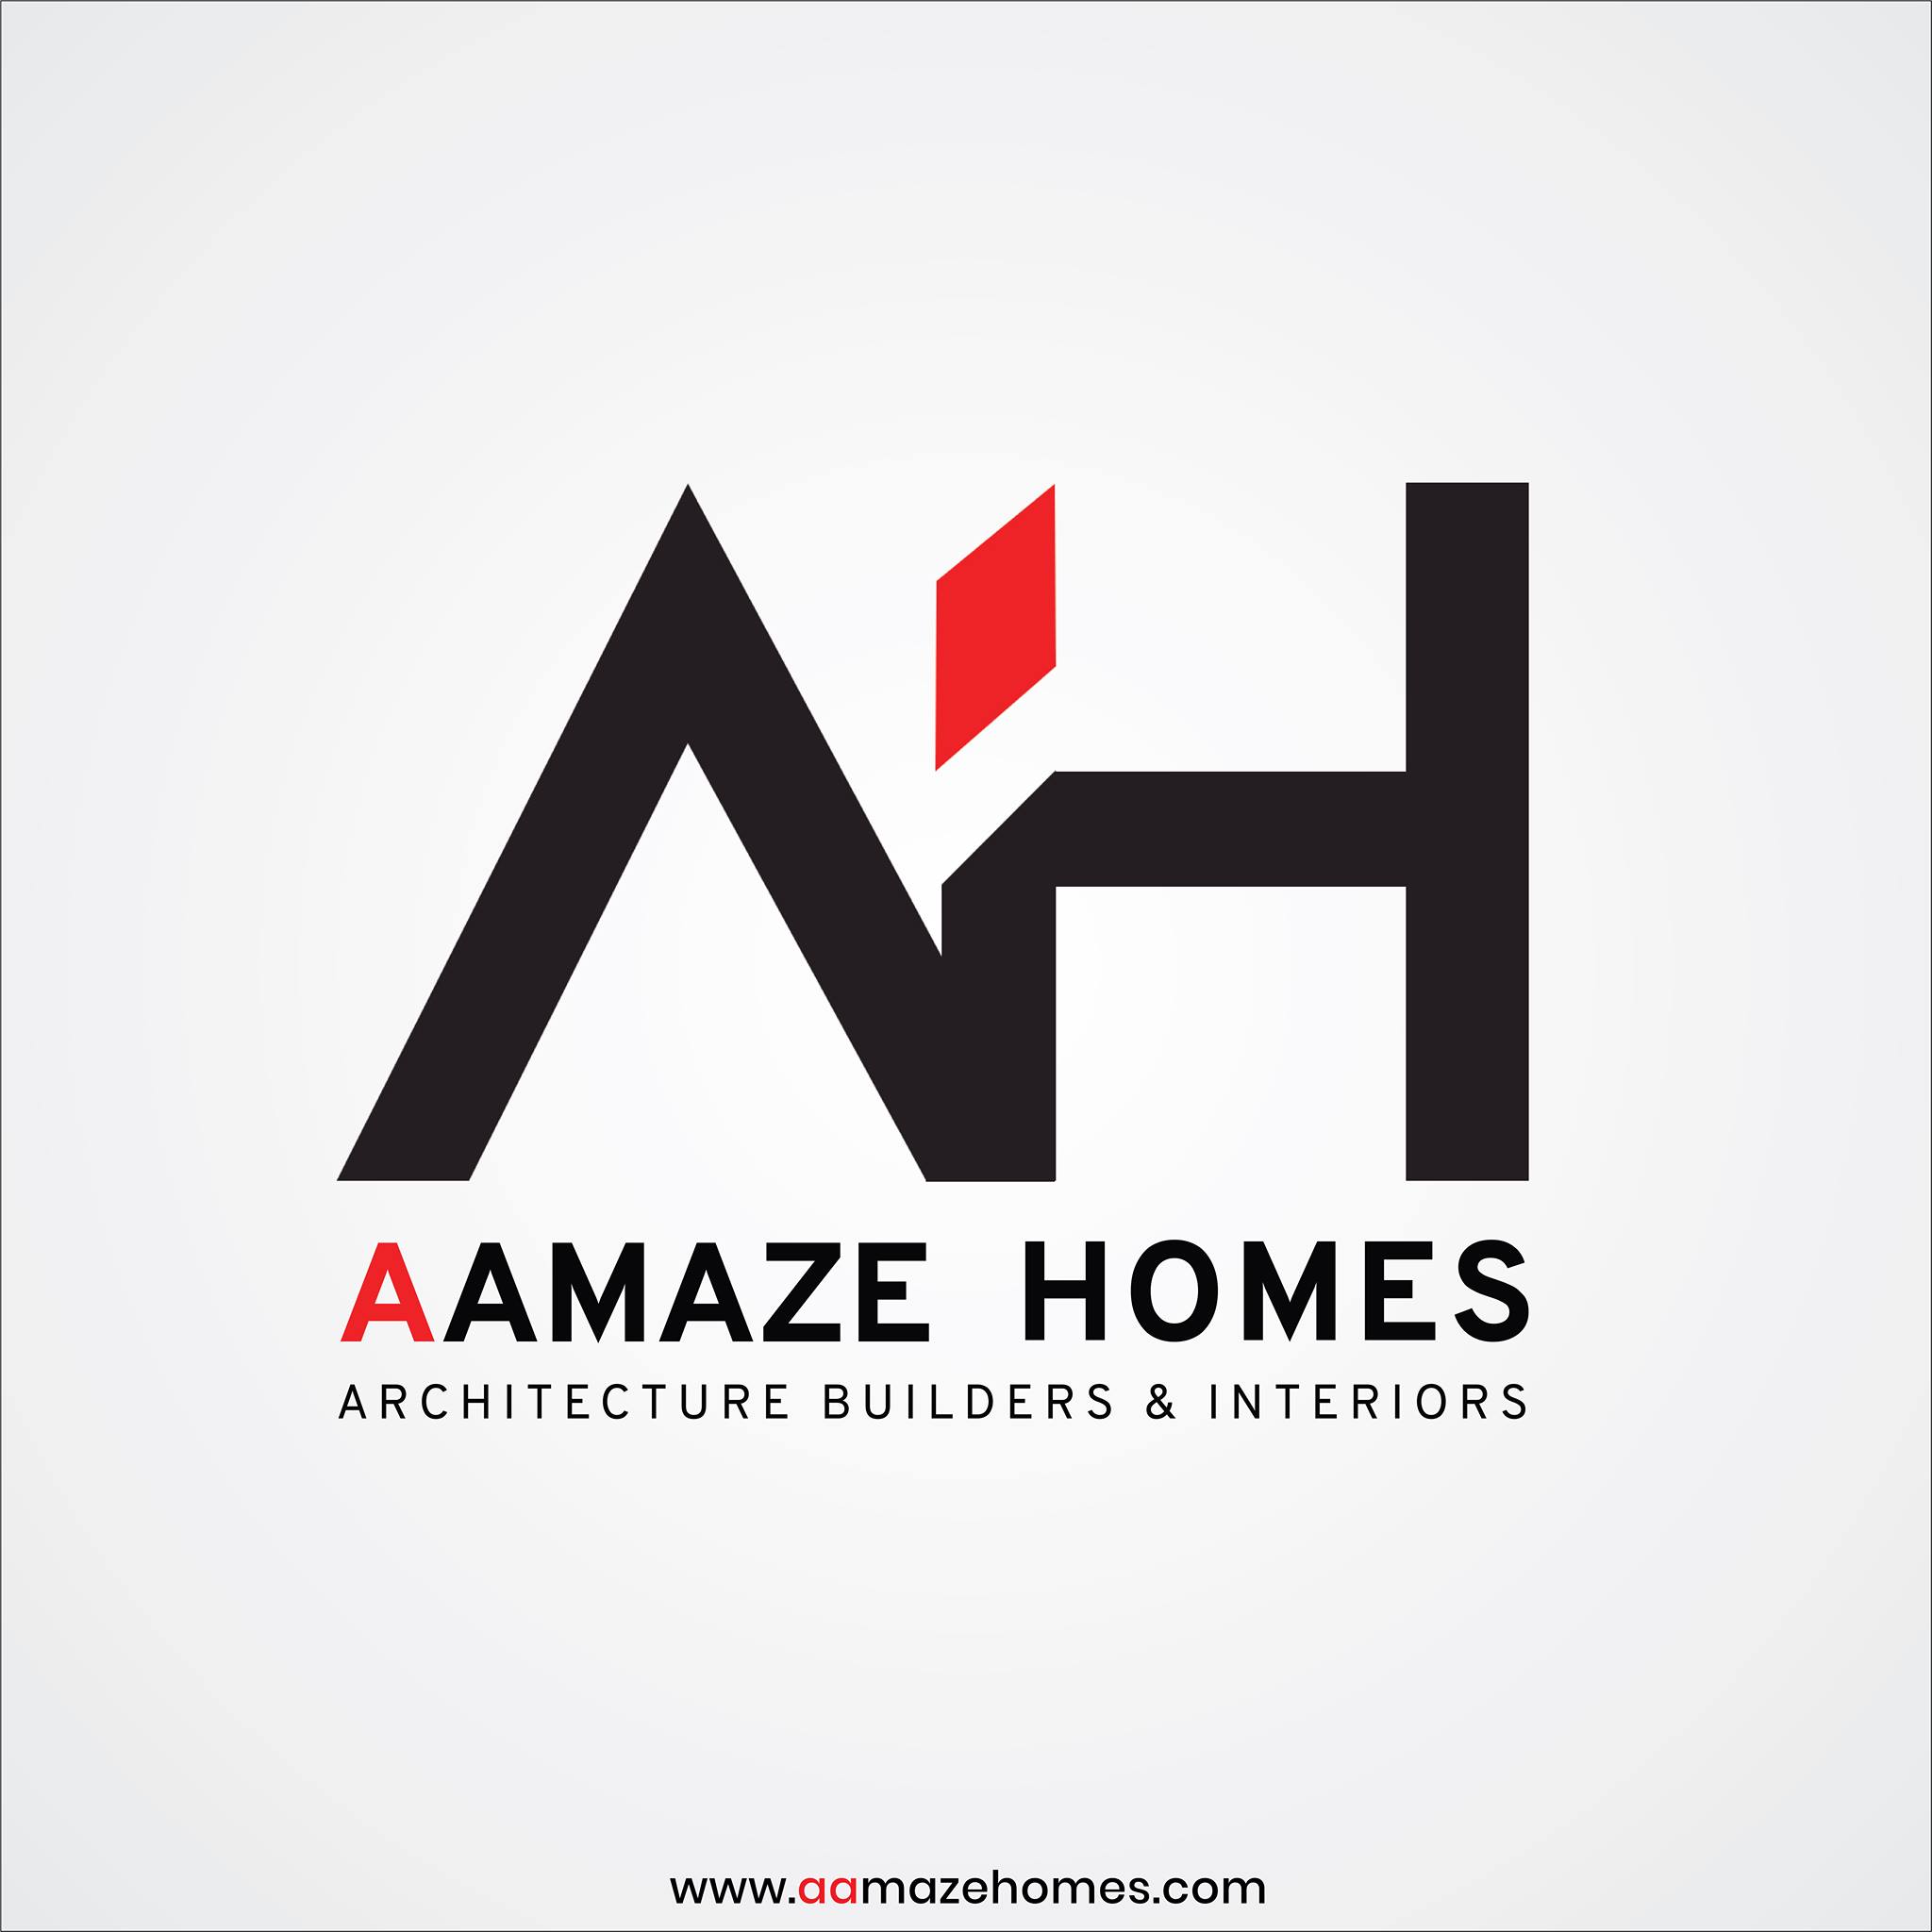 Aamaze homes Architects & Interiors Logo